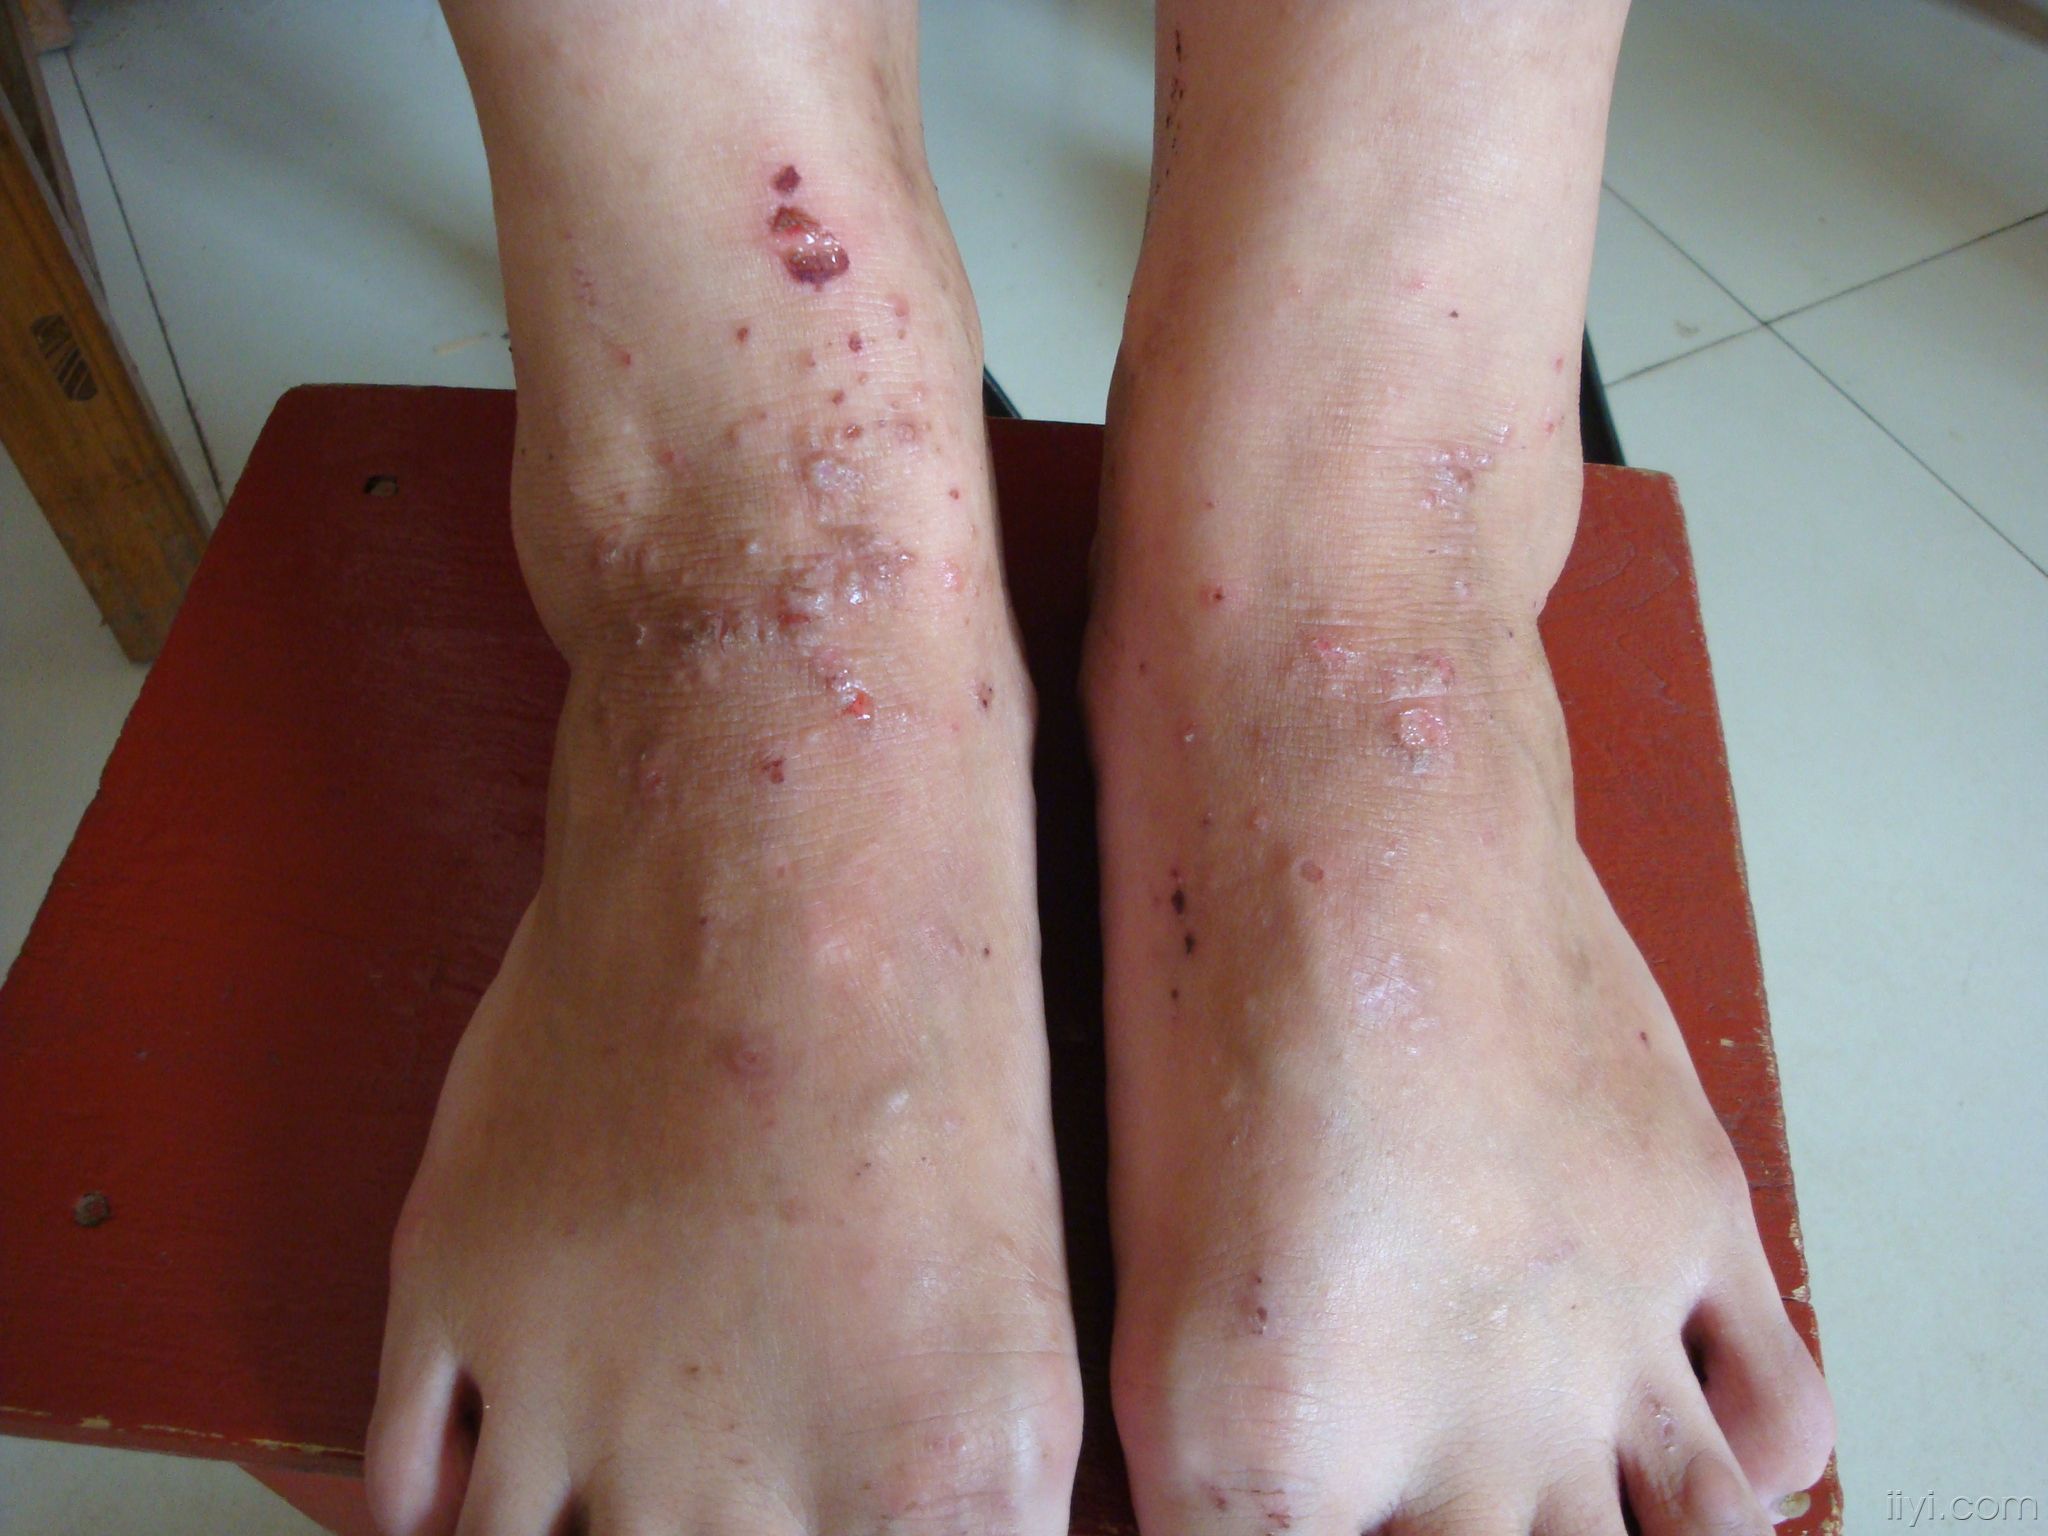 湿 疹足癣俗称脚气,是最常见的皮肤病之一,但也是最让人困扰的一种